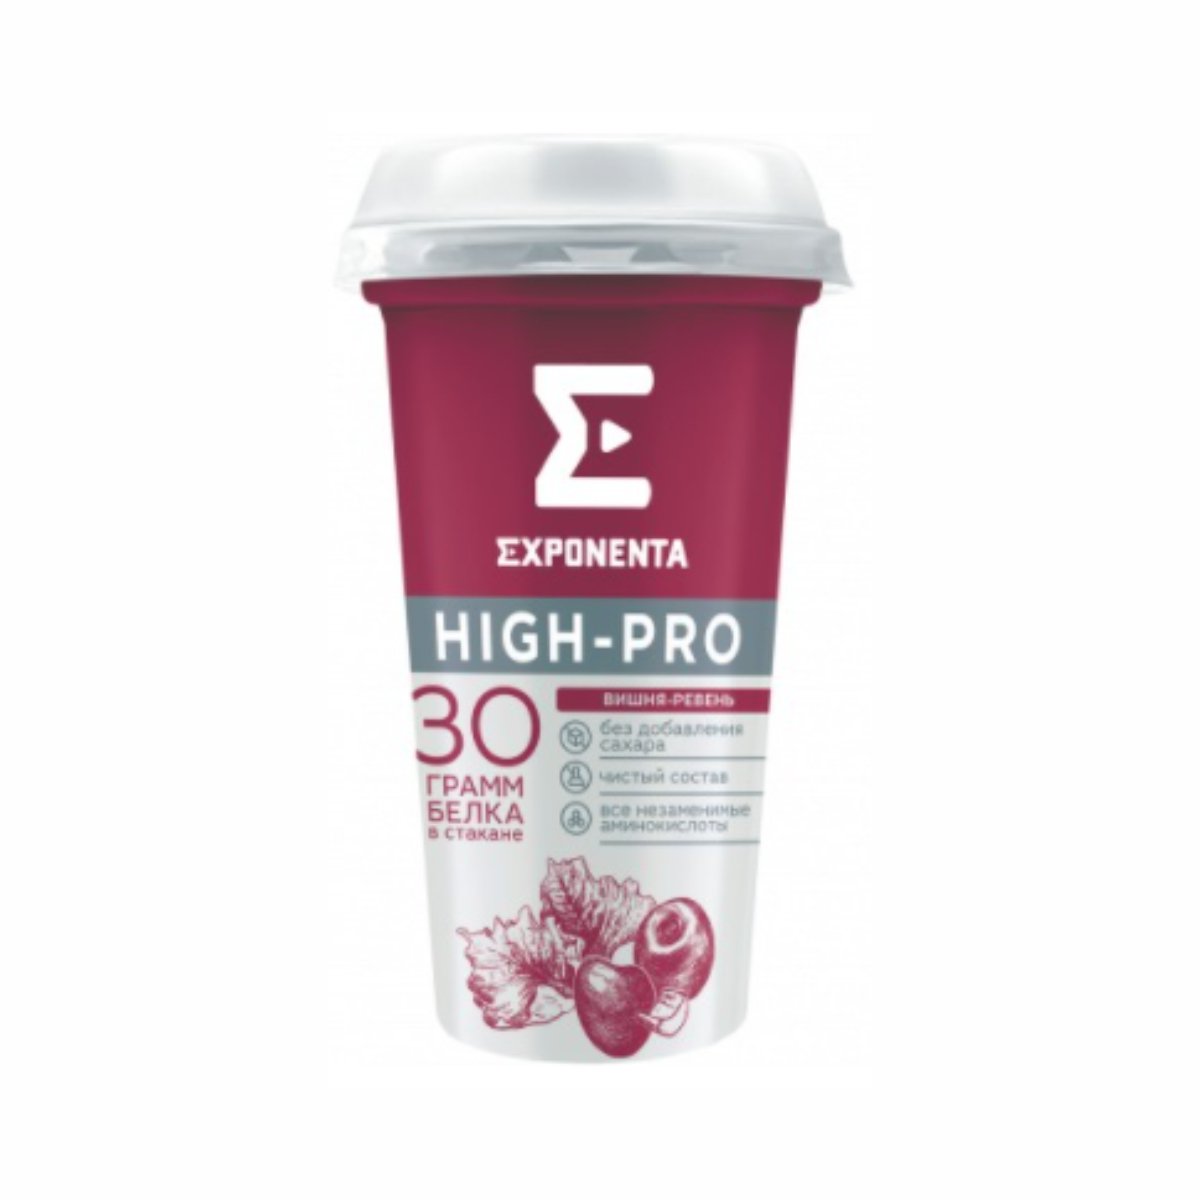 Exponenta high pro отзывы. Напиток Exponenta High Pro. Напиток Exponenta High-Pro кисломолочный Кокос-миндаль. Напиток кисломолочный обезжиренный Exponenta High-Pro. Exponenta High-Pro состав.